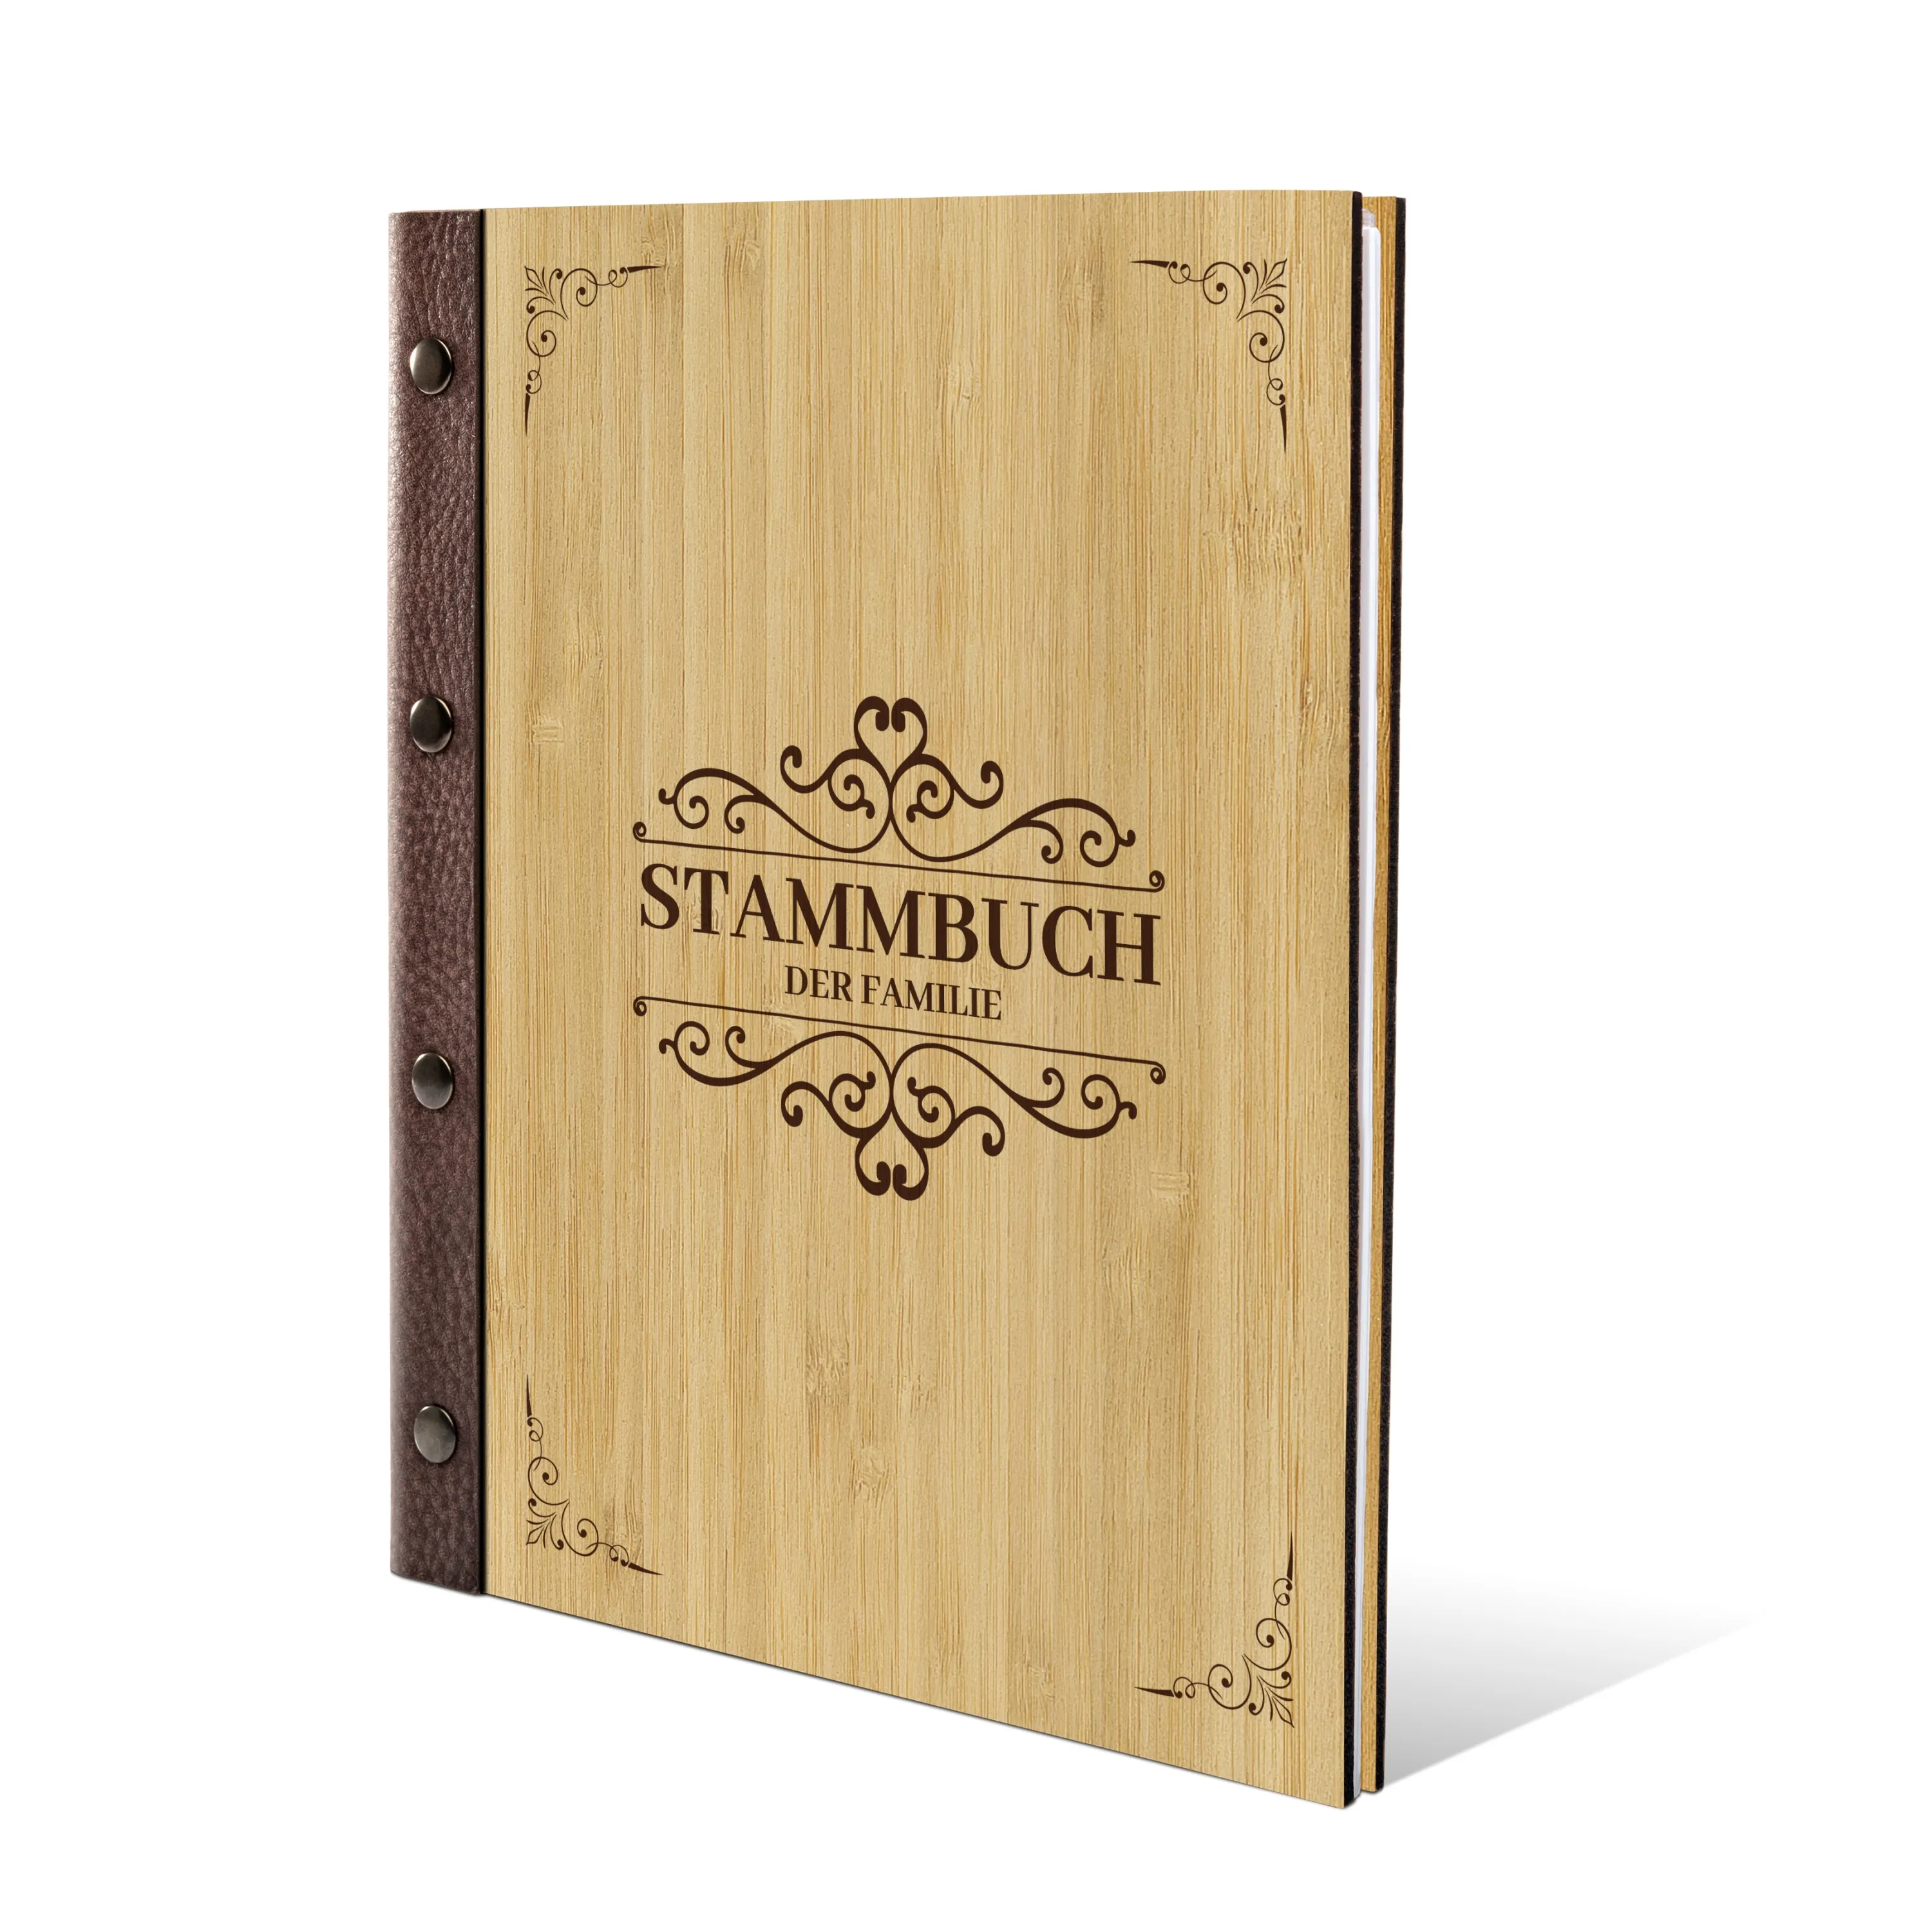 Stammbuch Bambus Stammbuchformat - Liebesgeschichte